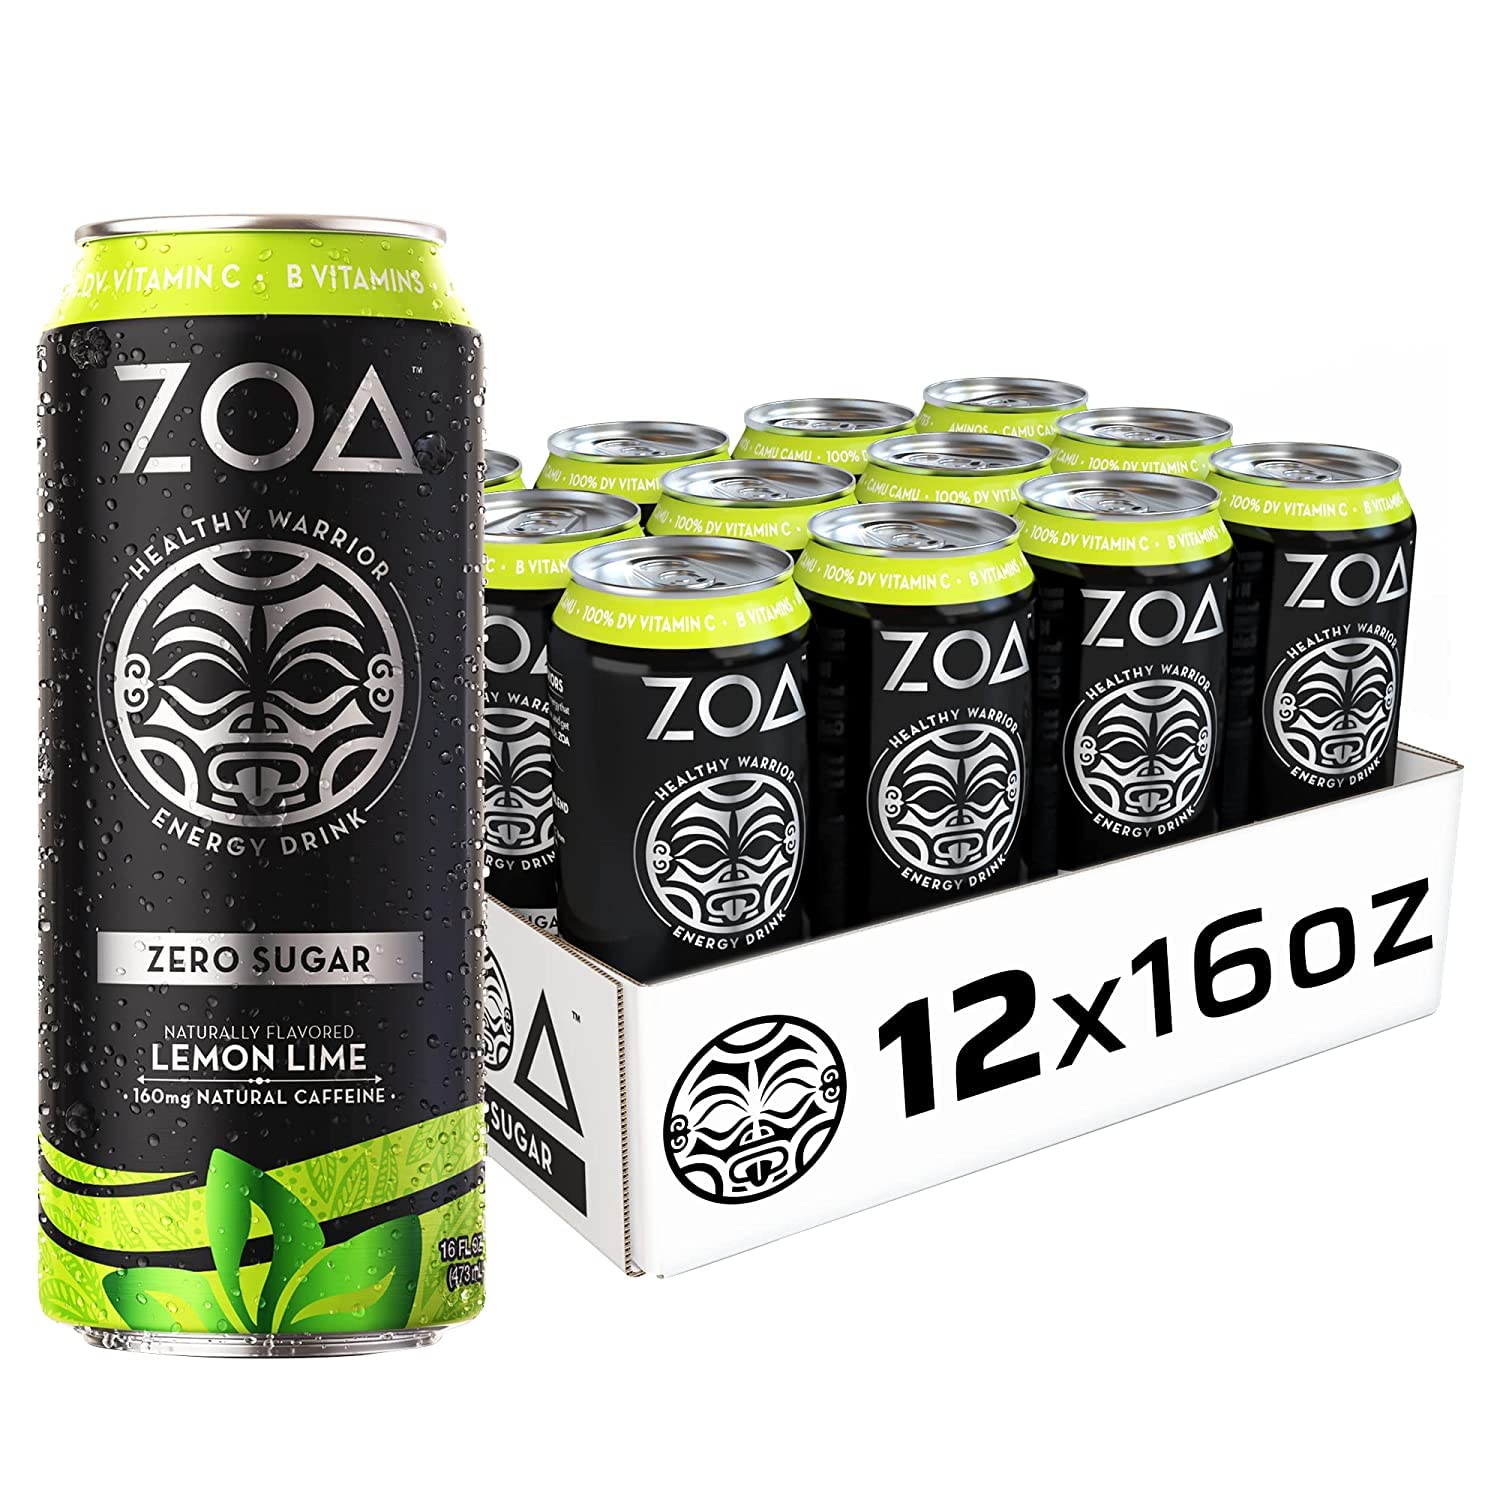 Zoa Zero Sugar Lemon Lime - 12 Pack